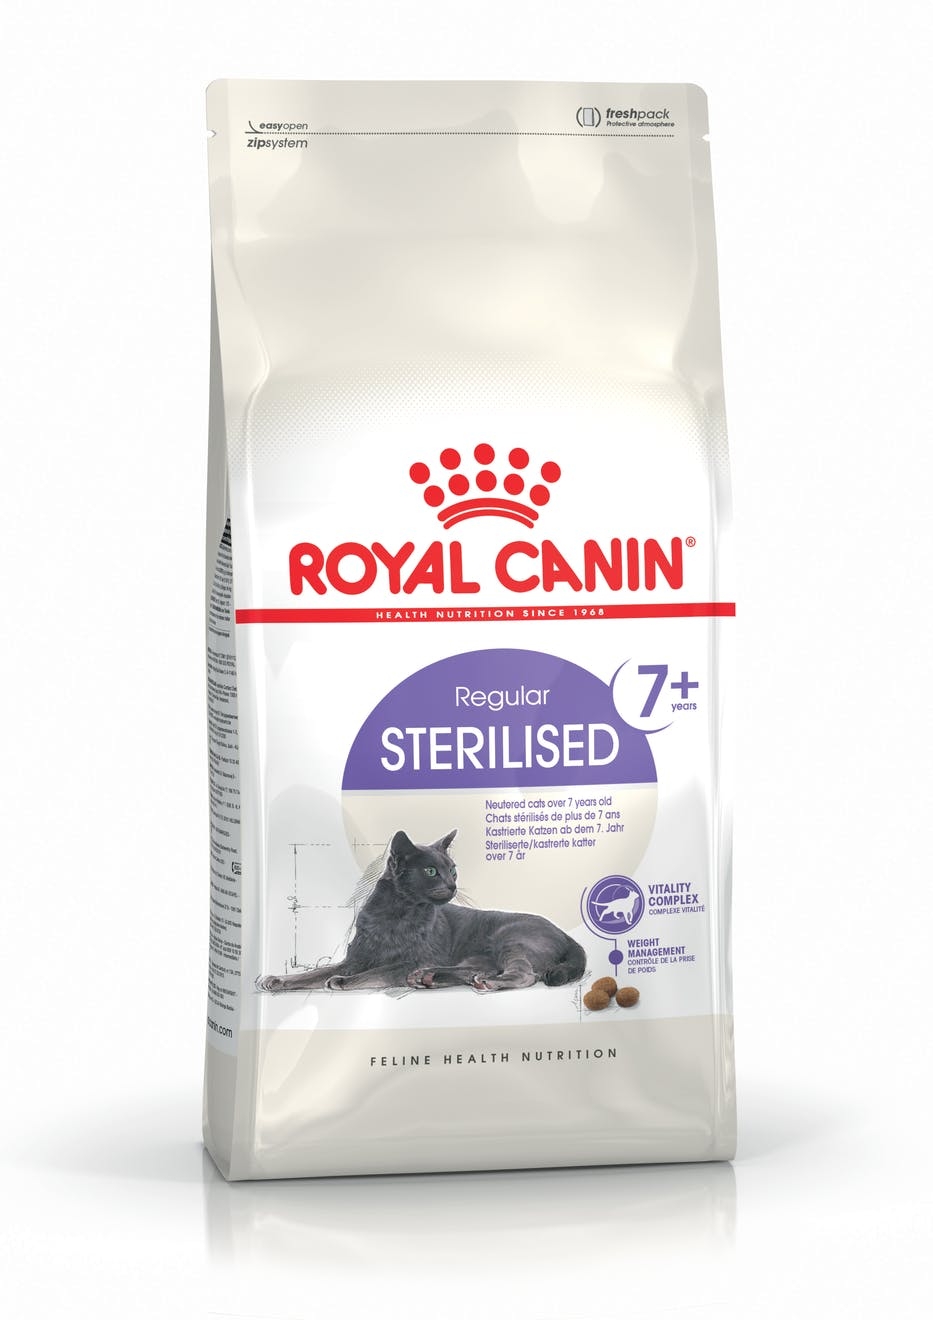 Billede af Royal Canin Sterilised 7+. Til steriliserede/kastrerede katte over 7 år